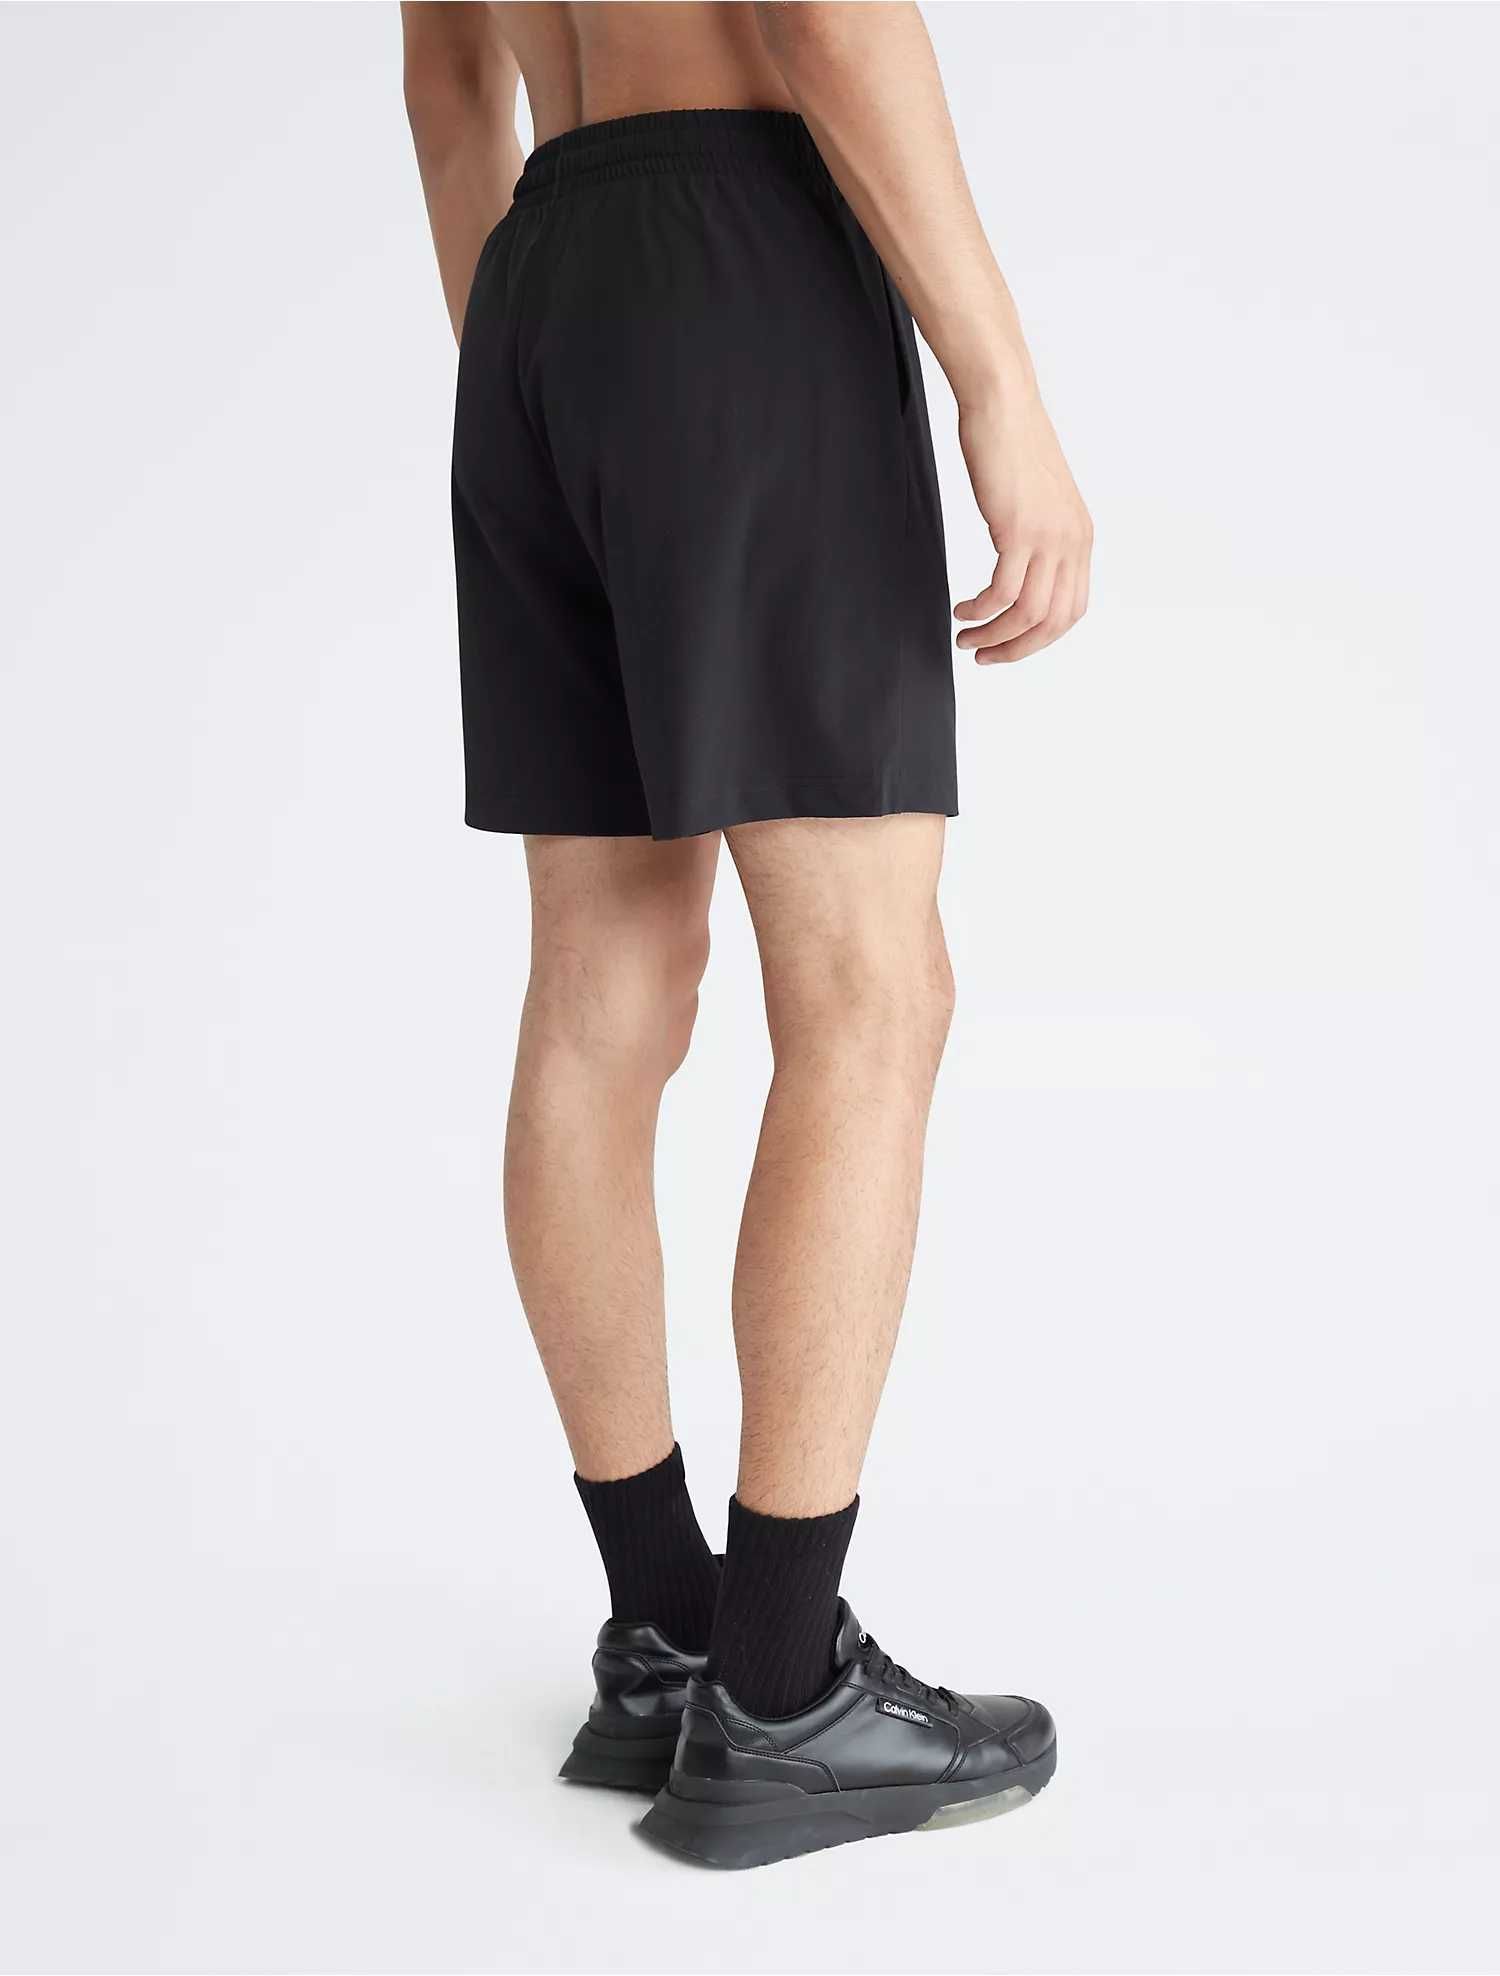 Новые шорты calvin klein (ck sport essentials woven shorts)с америки L